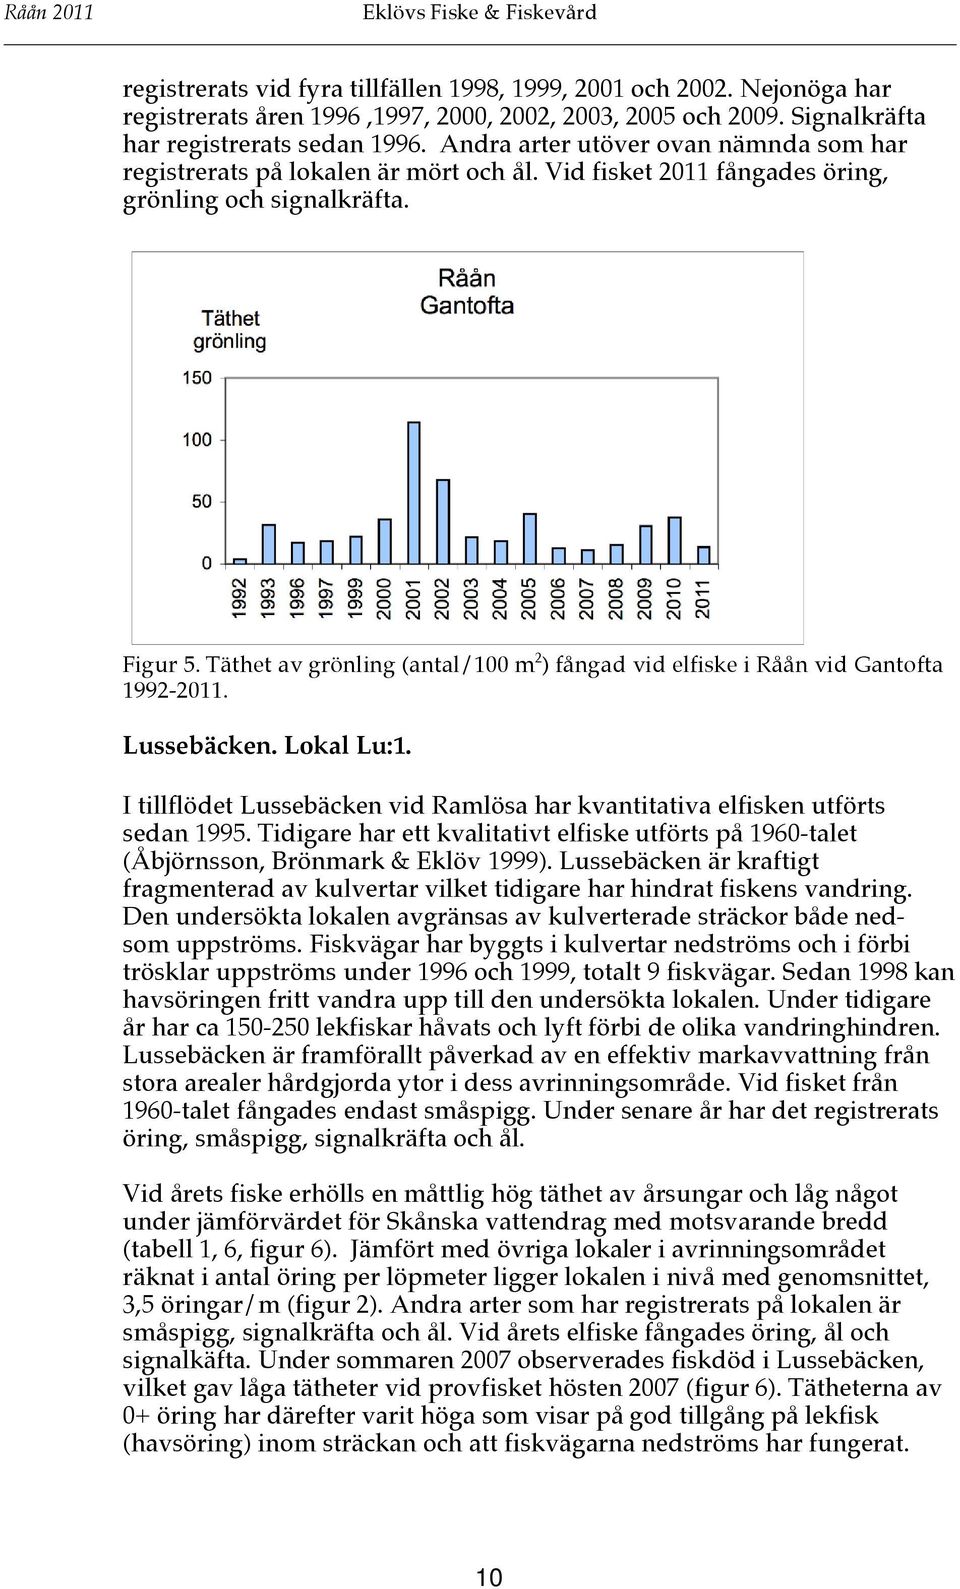 Täthet av grönling (antal/100 m 2 ) fångad vid elfiske i Råån vid Gantofta 1992-2011. Lussebäcken. Lokal Lu:1. I tillflödet Lussebäcken vid Ramlösa har kvantitativa elfisken utförts sedan 1995.